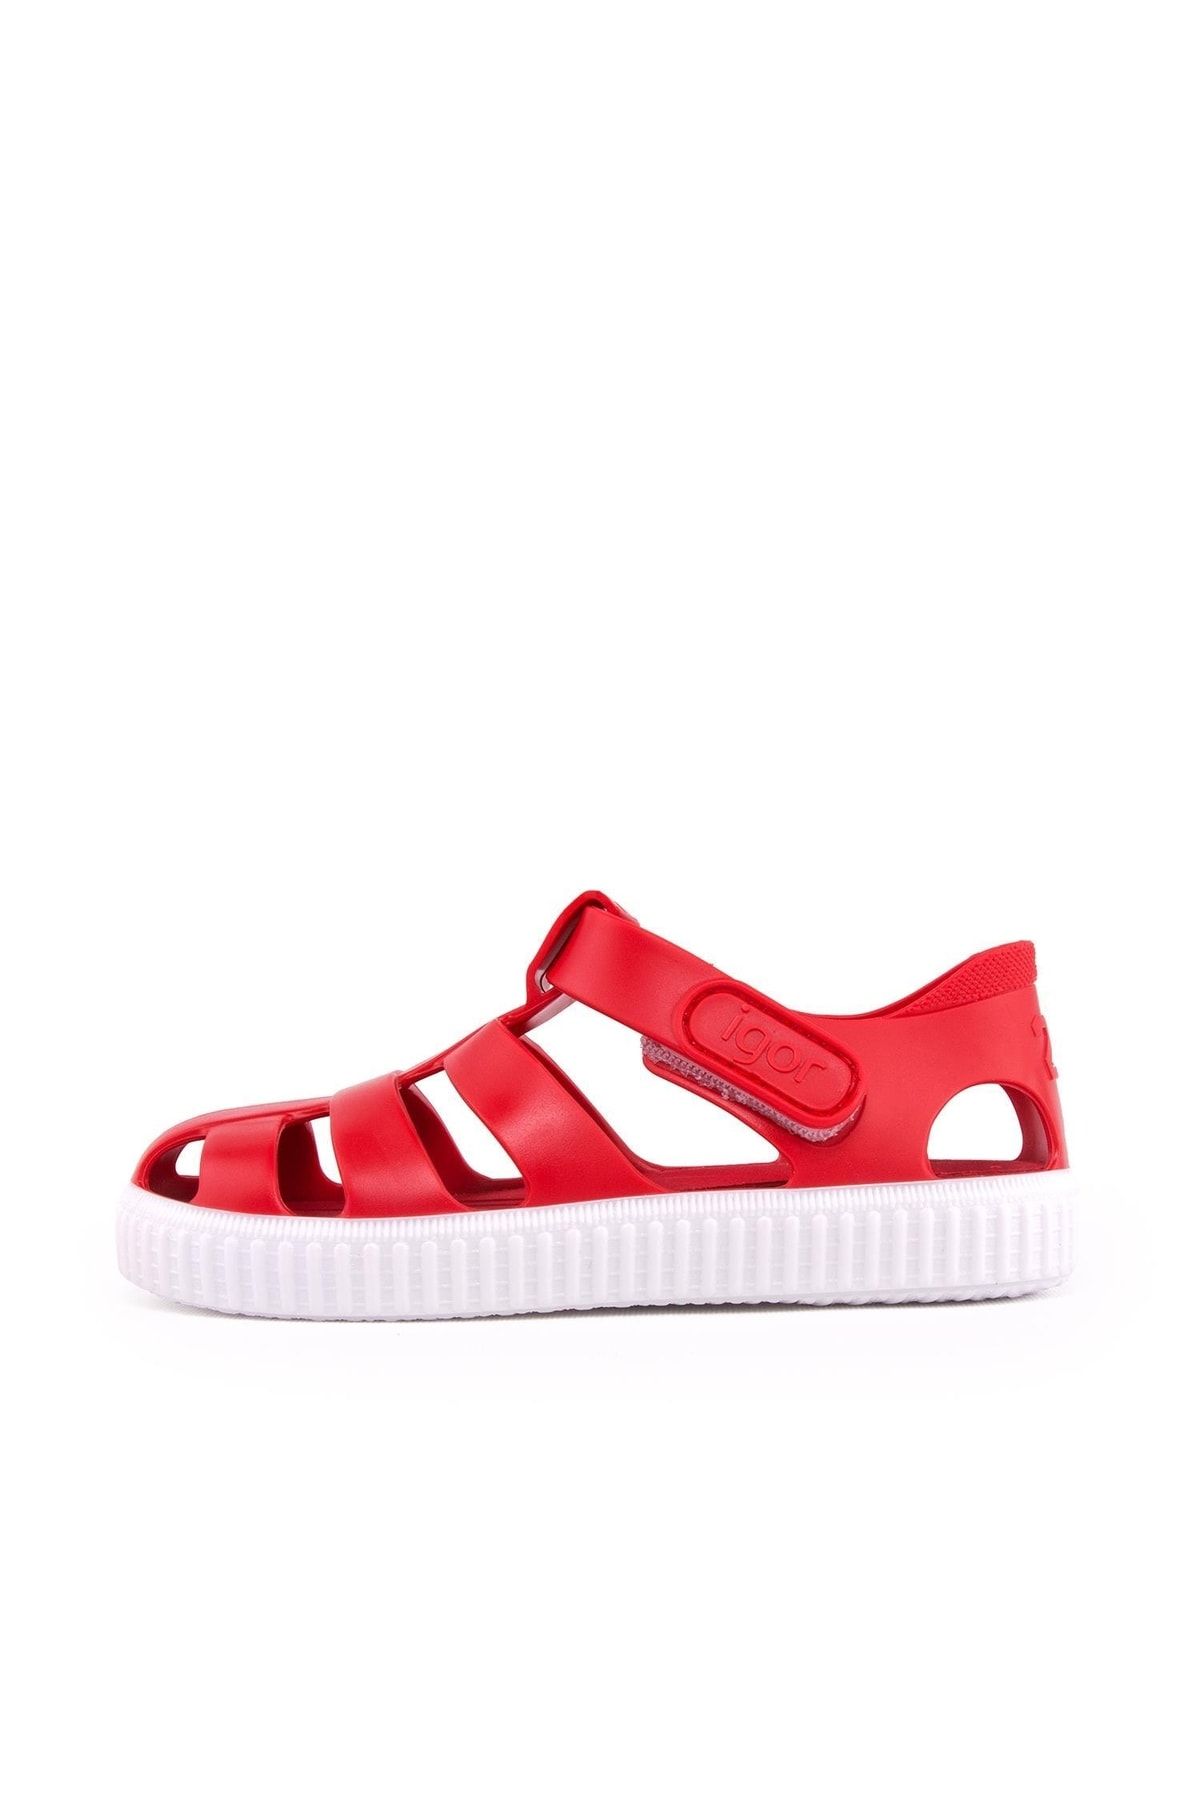 IGOR S10289 Nico Çocuk Kırmızı Beyaz Sandalet